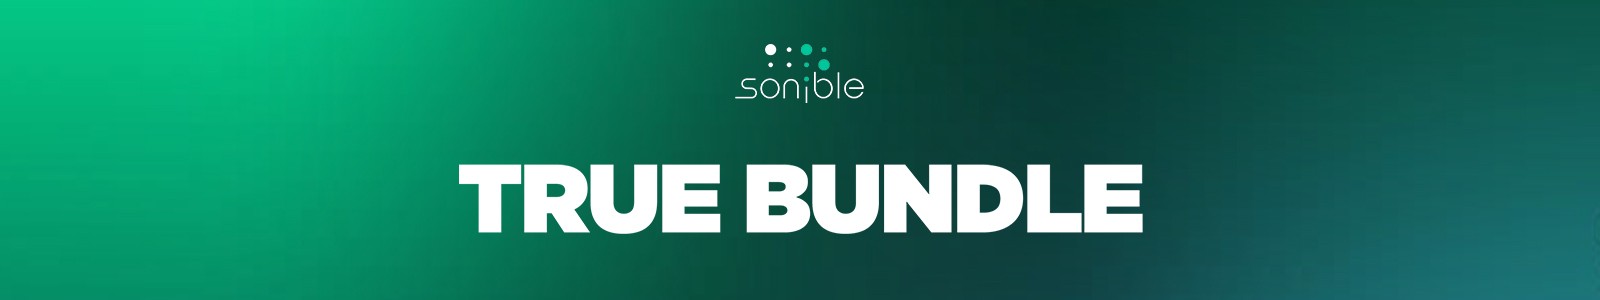 Sonible True Bundle